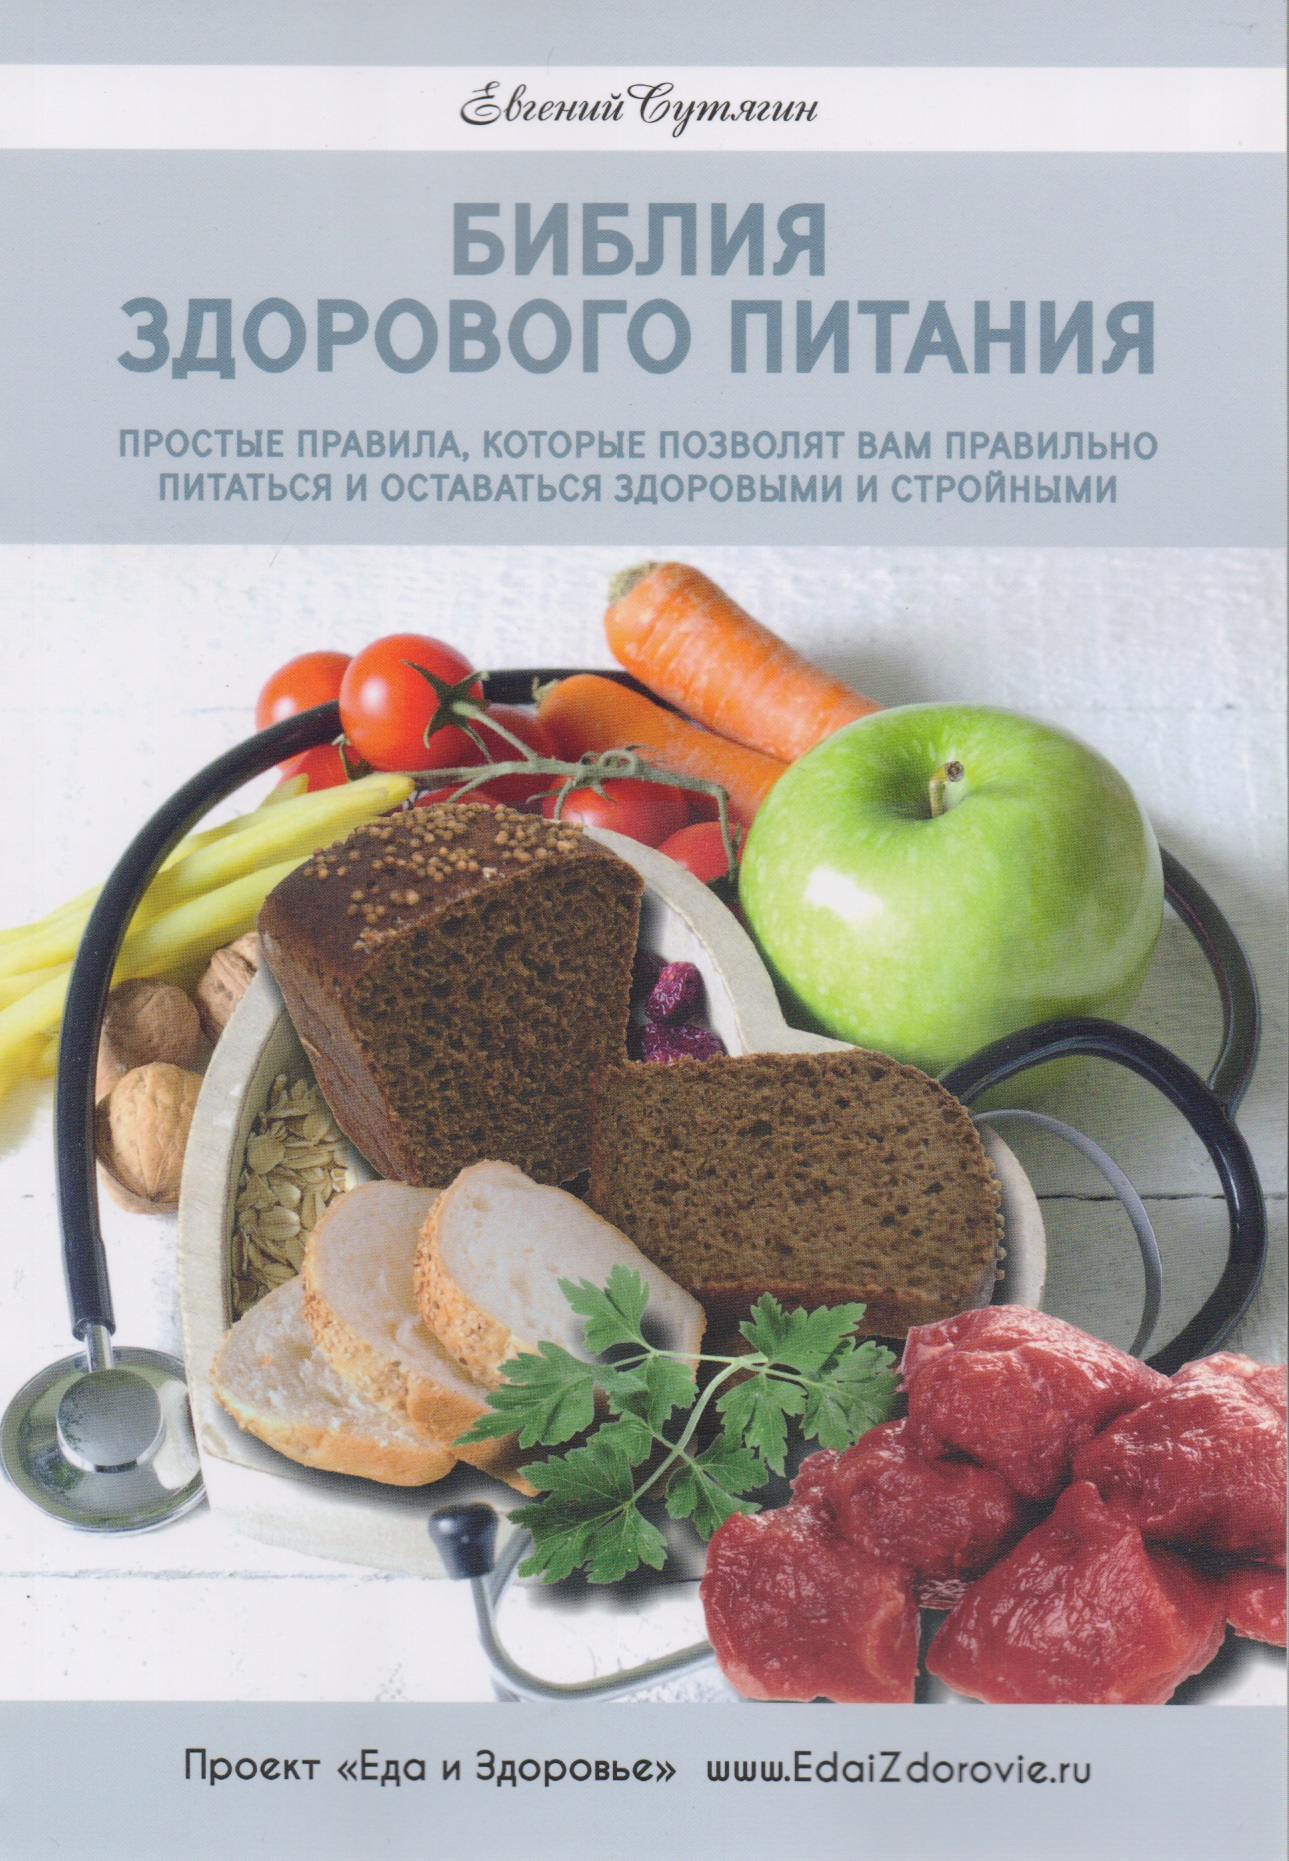 Сутягин Евгений Анатольевич Библия здорового питания